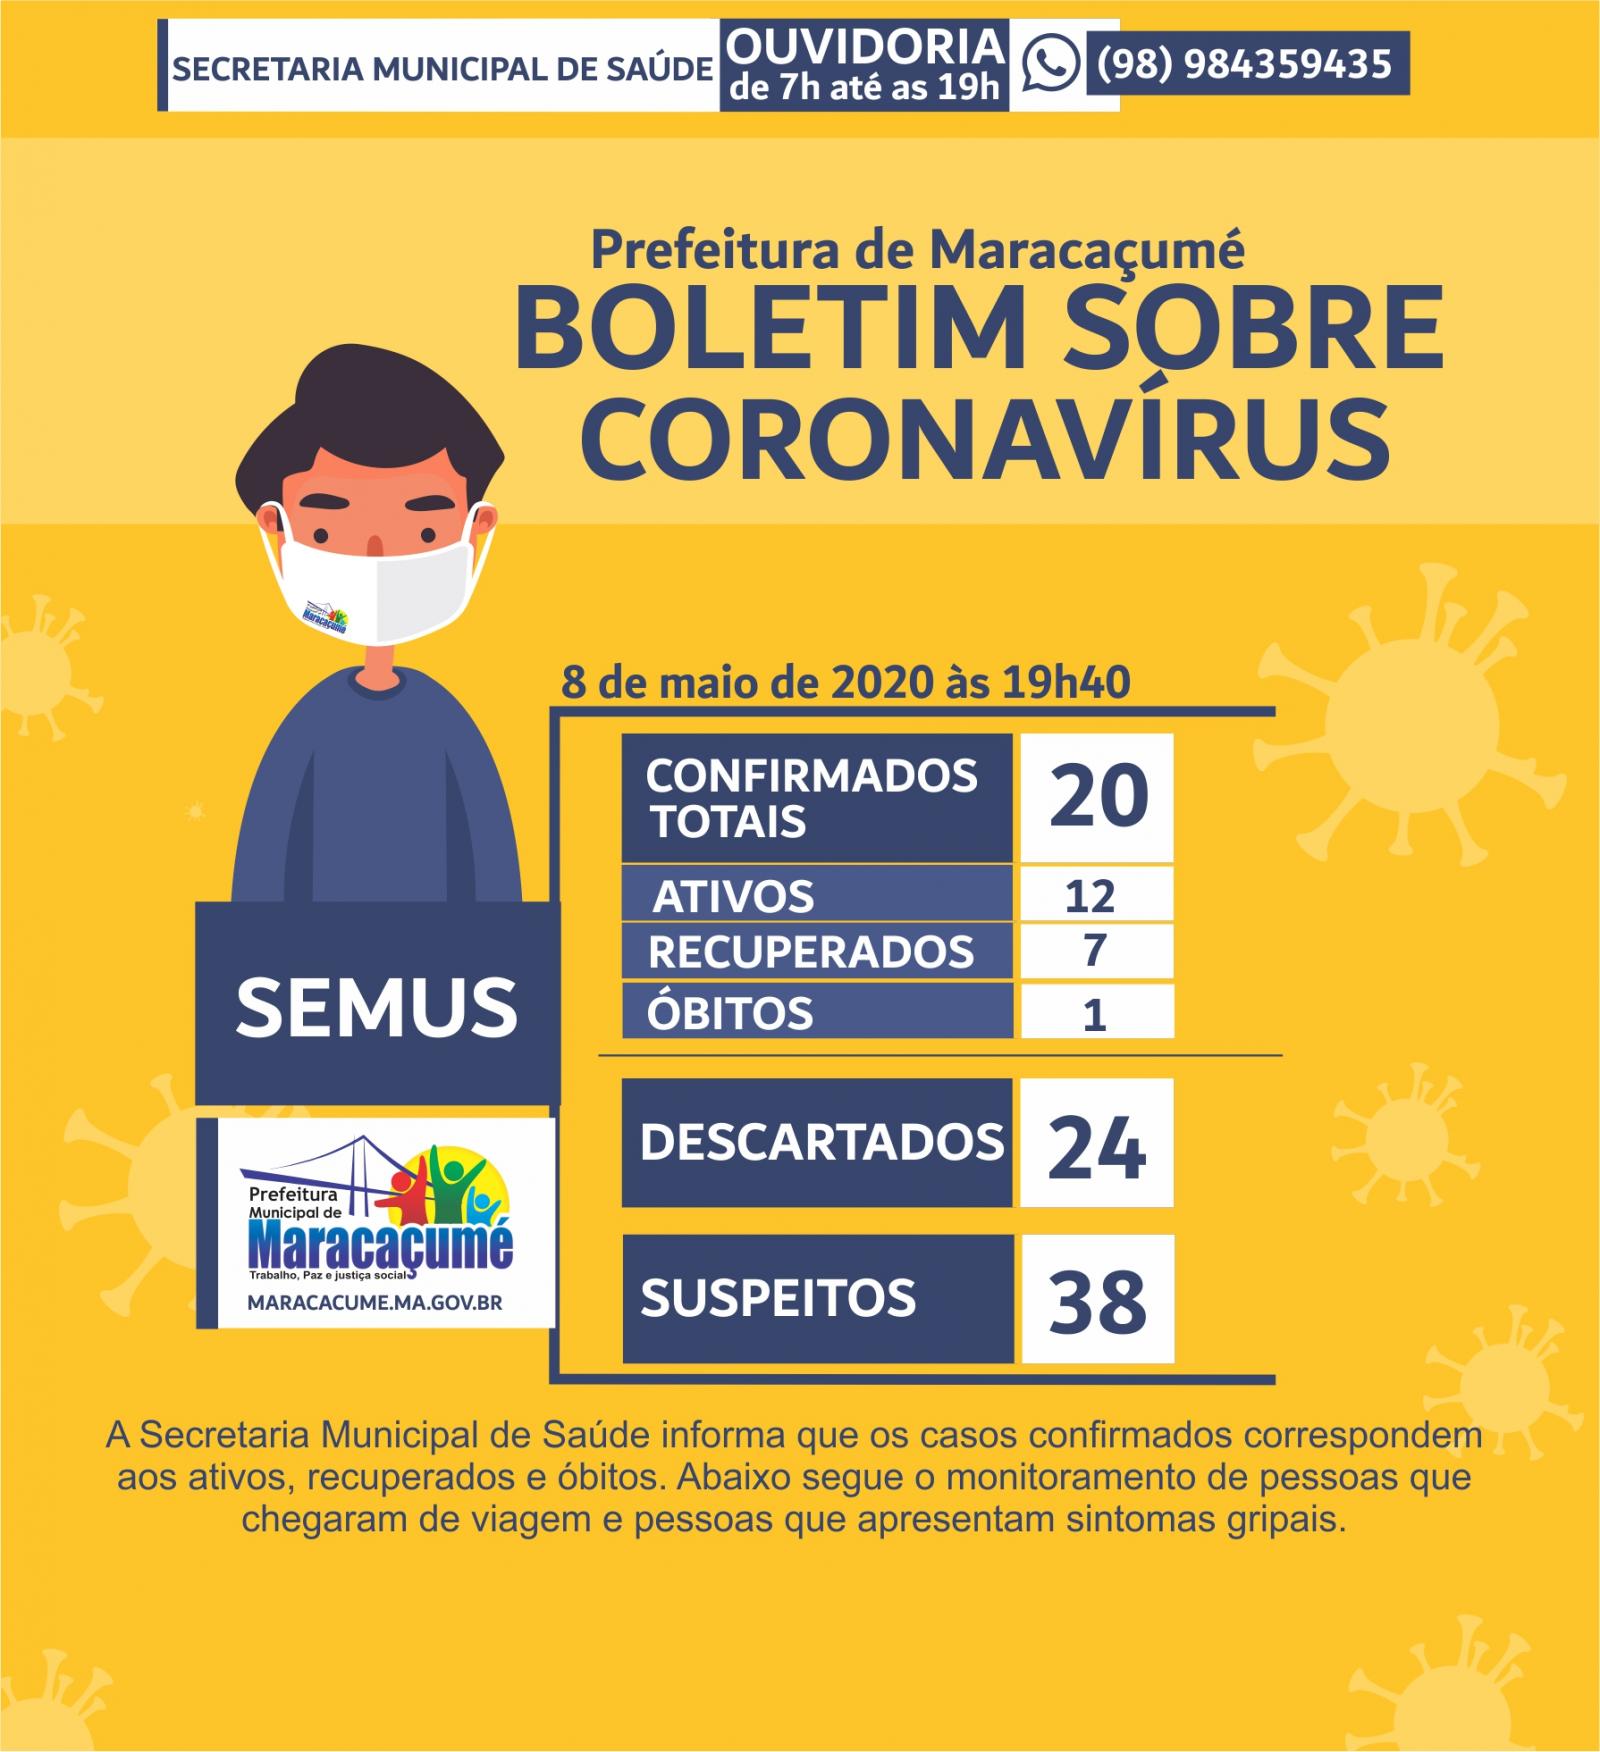 Agora já são 7 casos curados da covid-19 em Maracaçumé